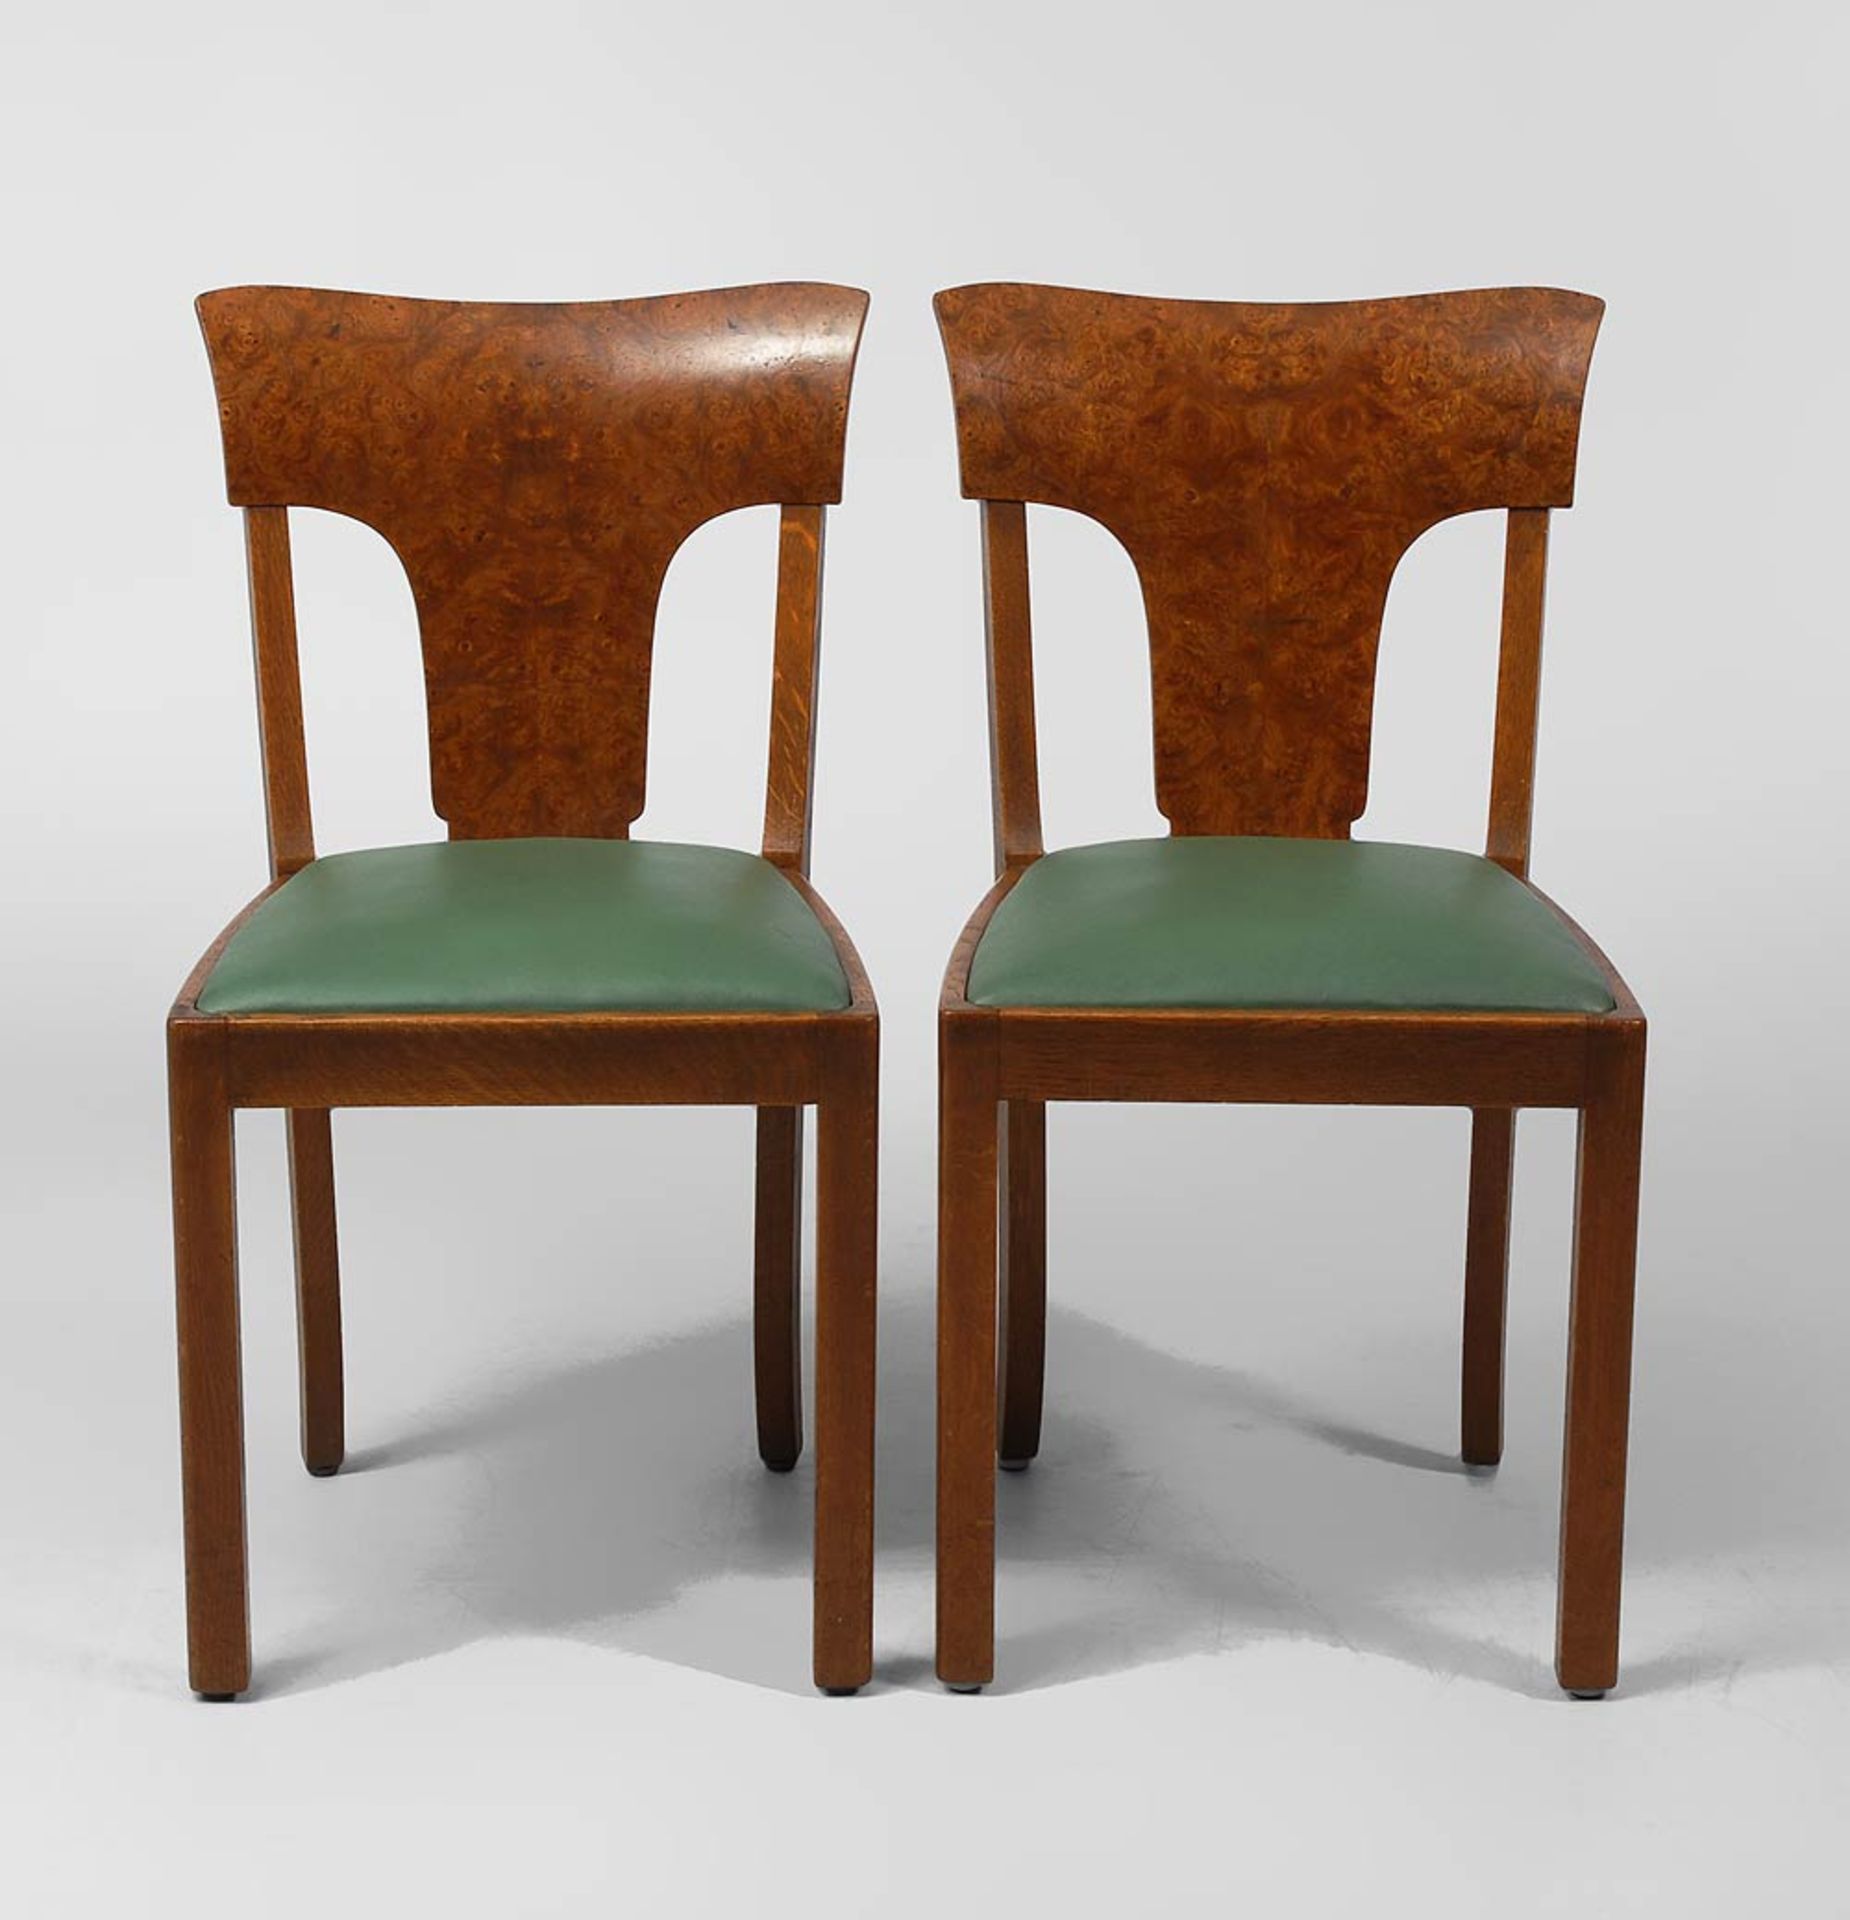 Paar Art-déco-Stühle. Um 1920/30. Eiche massiv und Wurzelholz furniert. Am Rahmen gestempelt "18", - Image 2 of 2